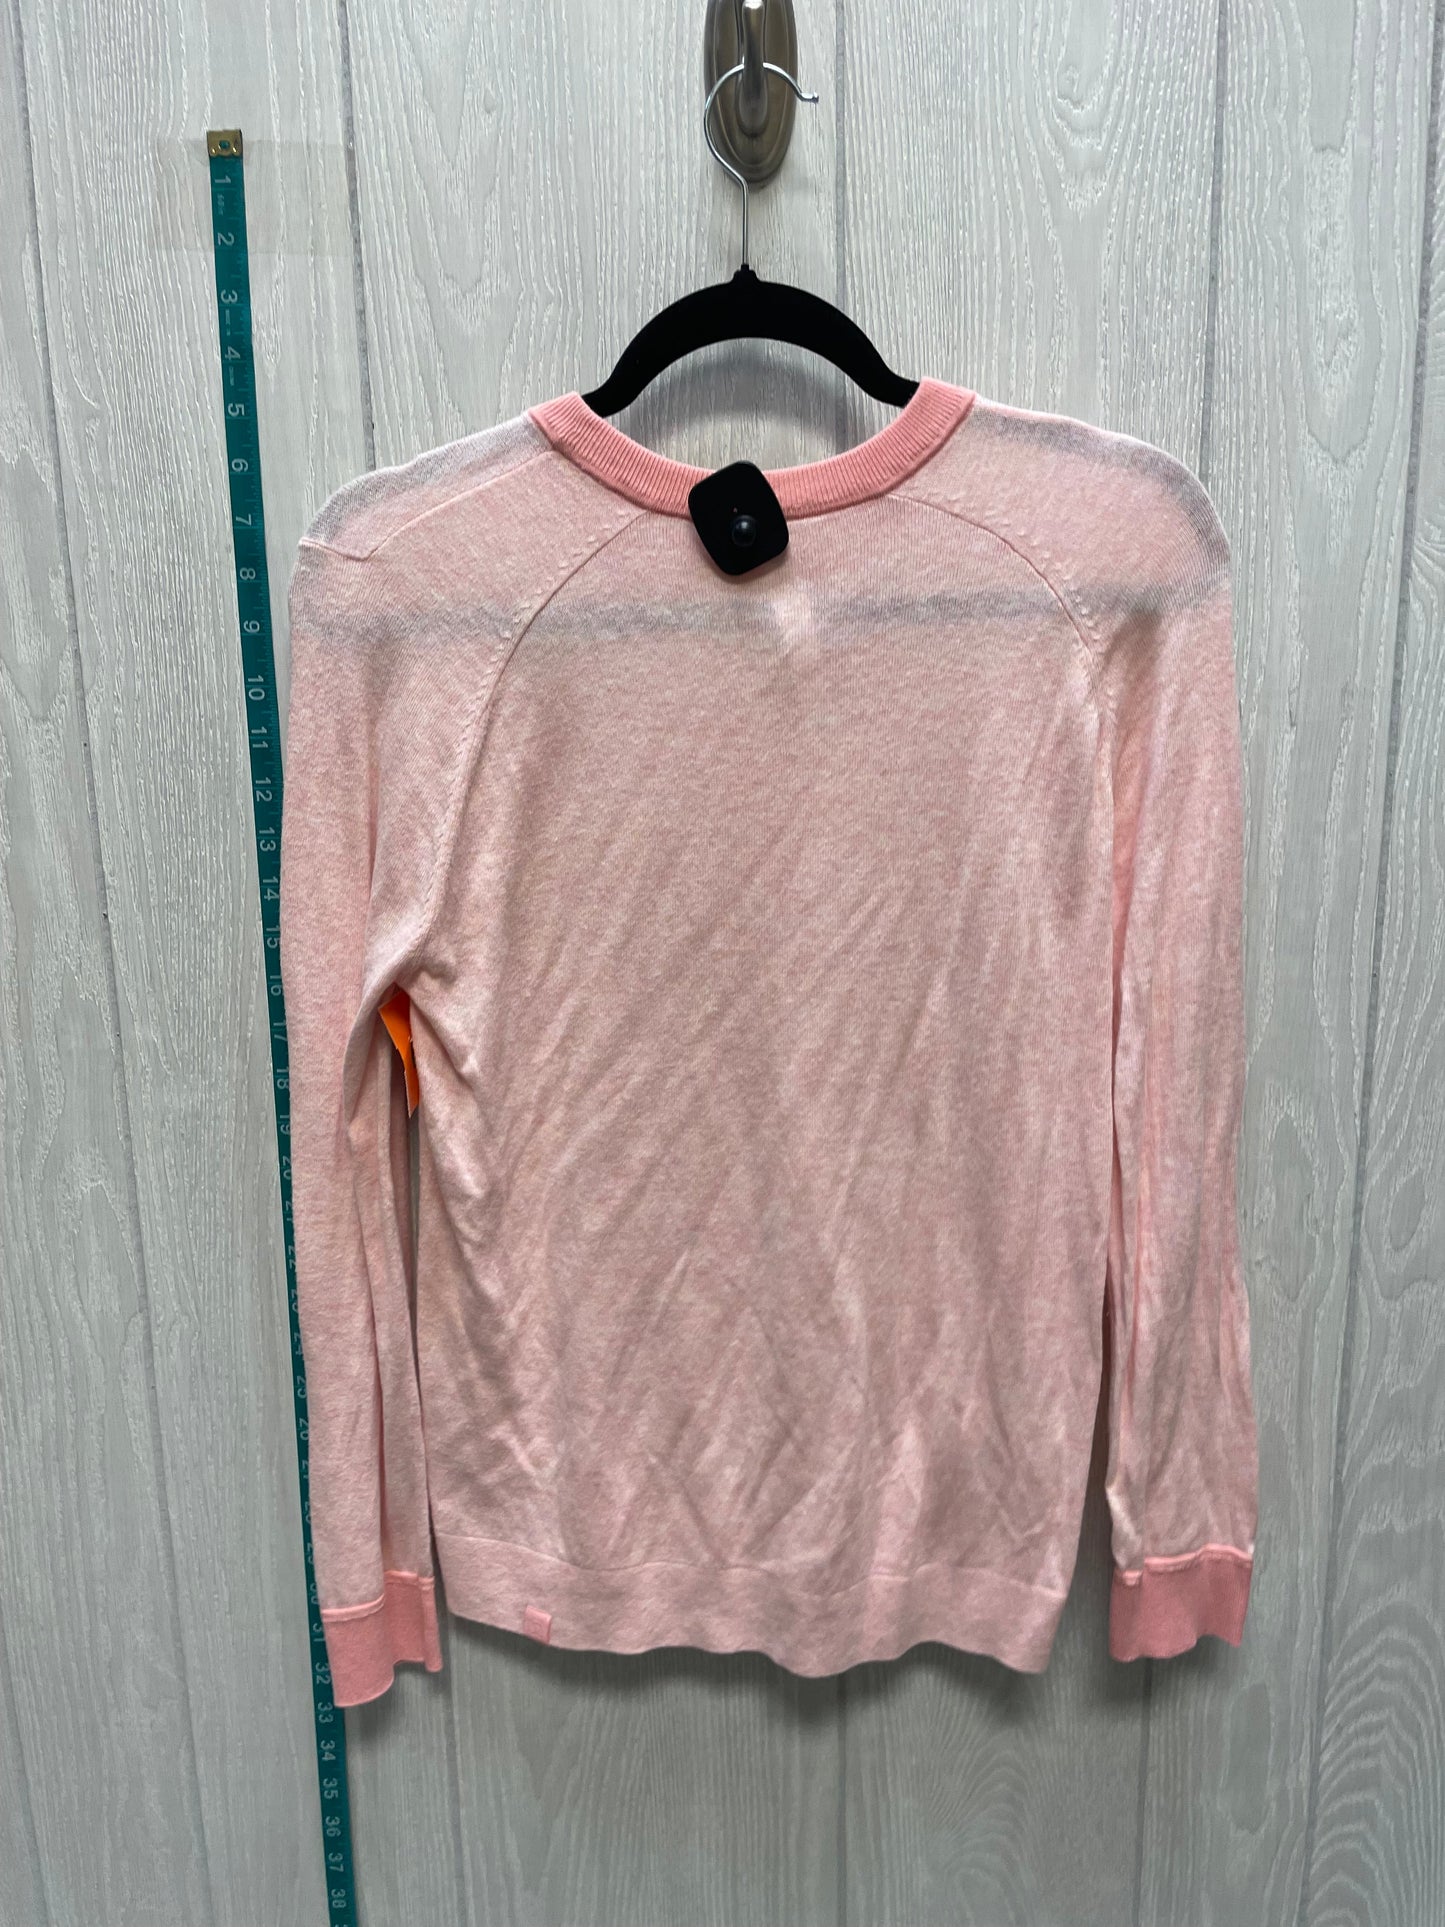 Orange & Pink Sweater Lululemon, Size S